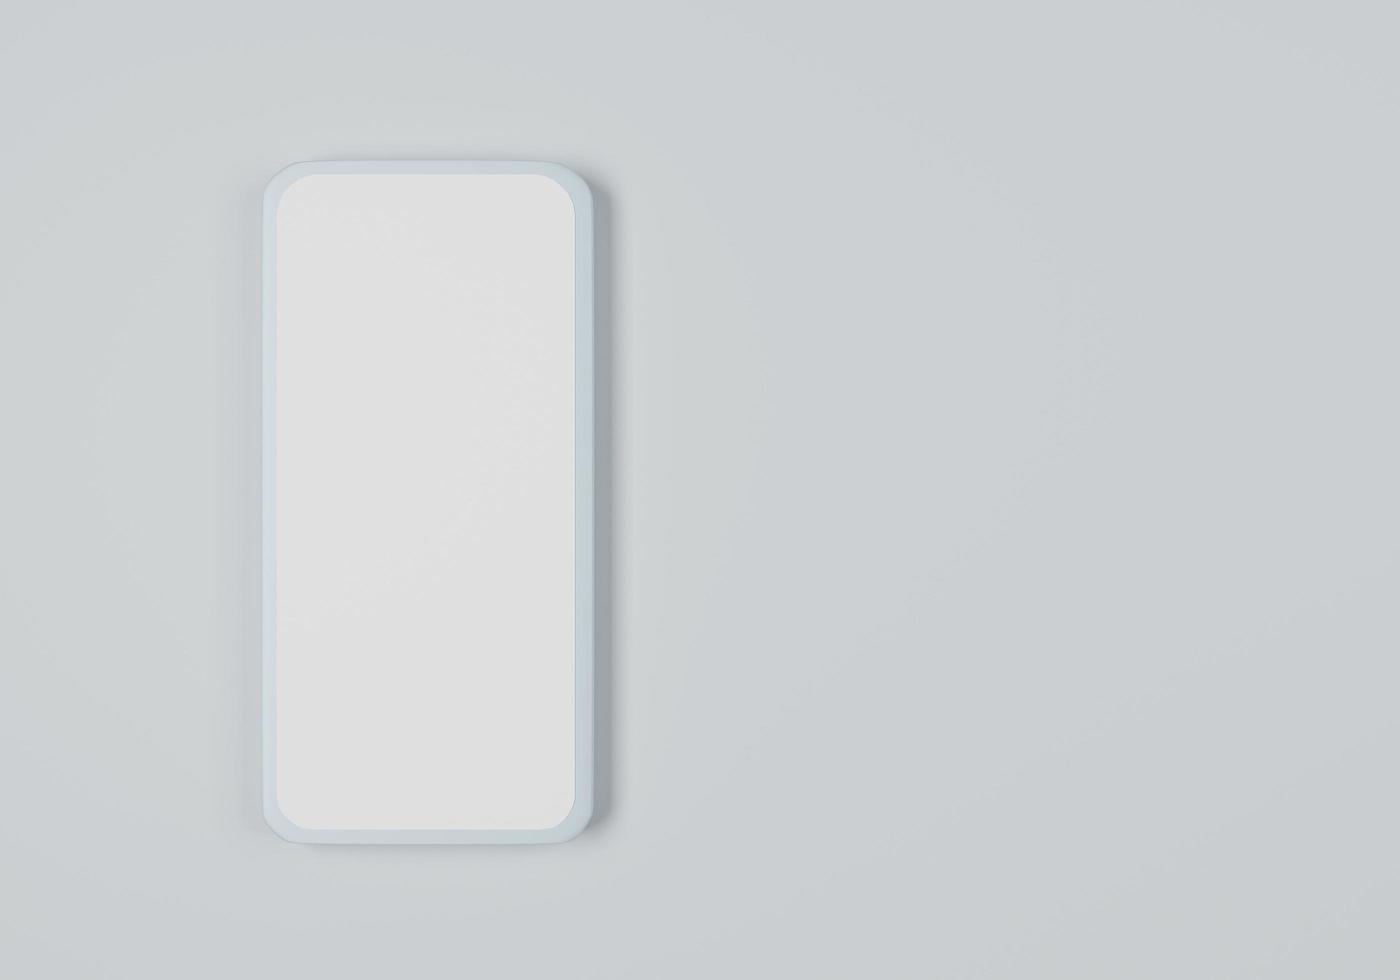 3D-telefoonmodel met kopie ruimte wit scherm op bovenaanzicht moderne smartphone 3D-rendering illustratie foto